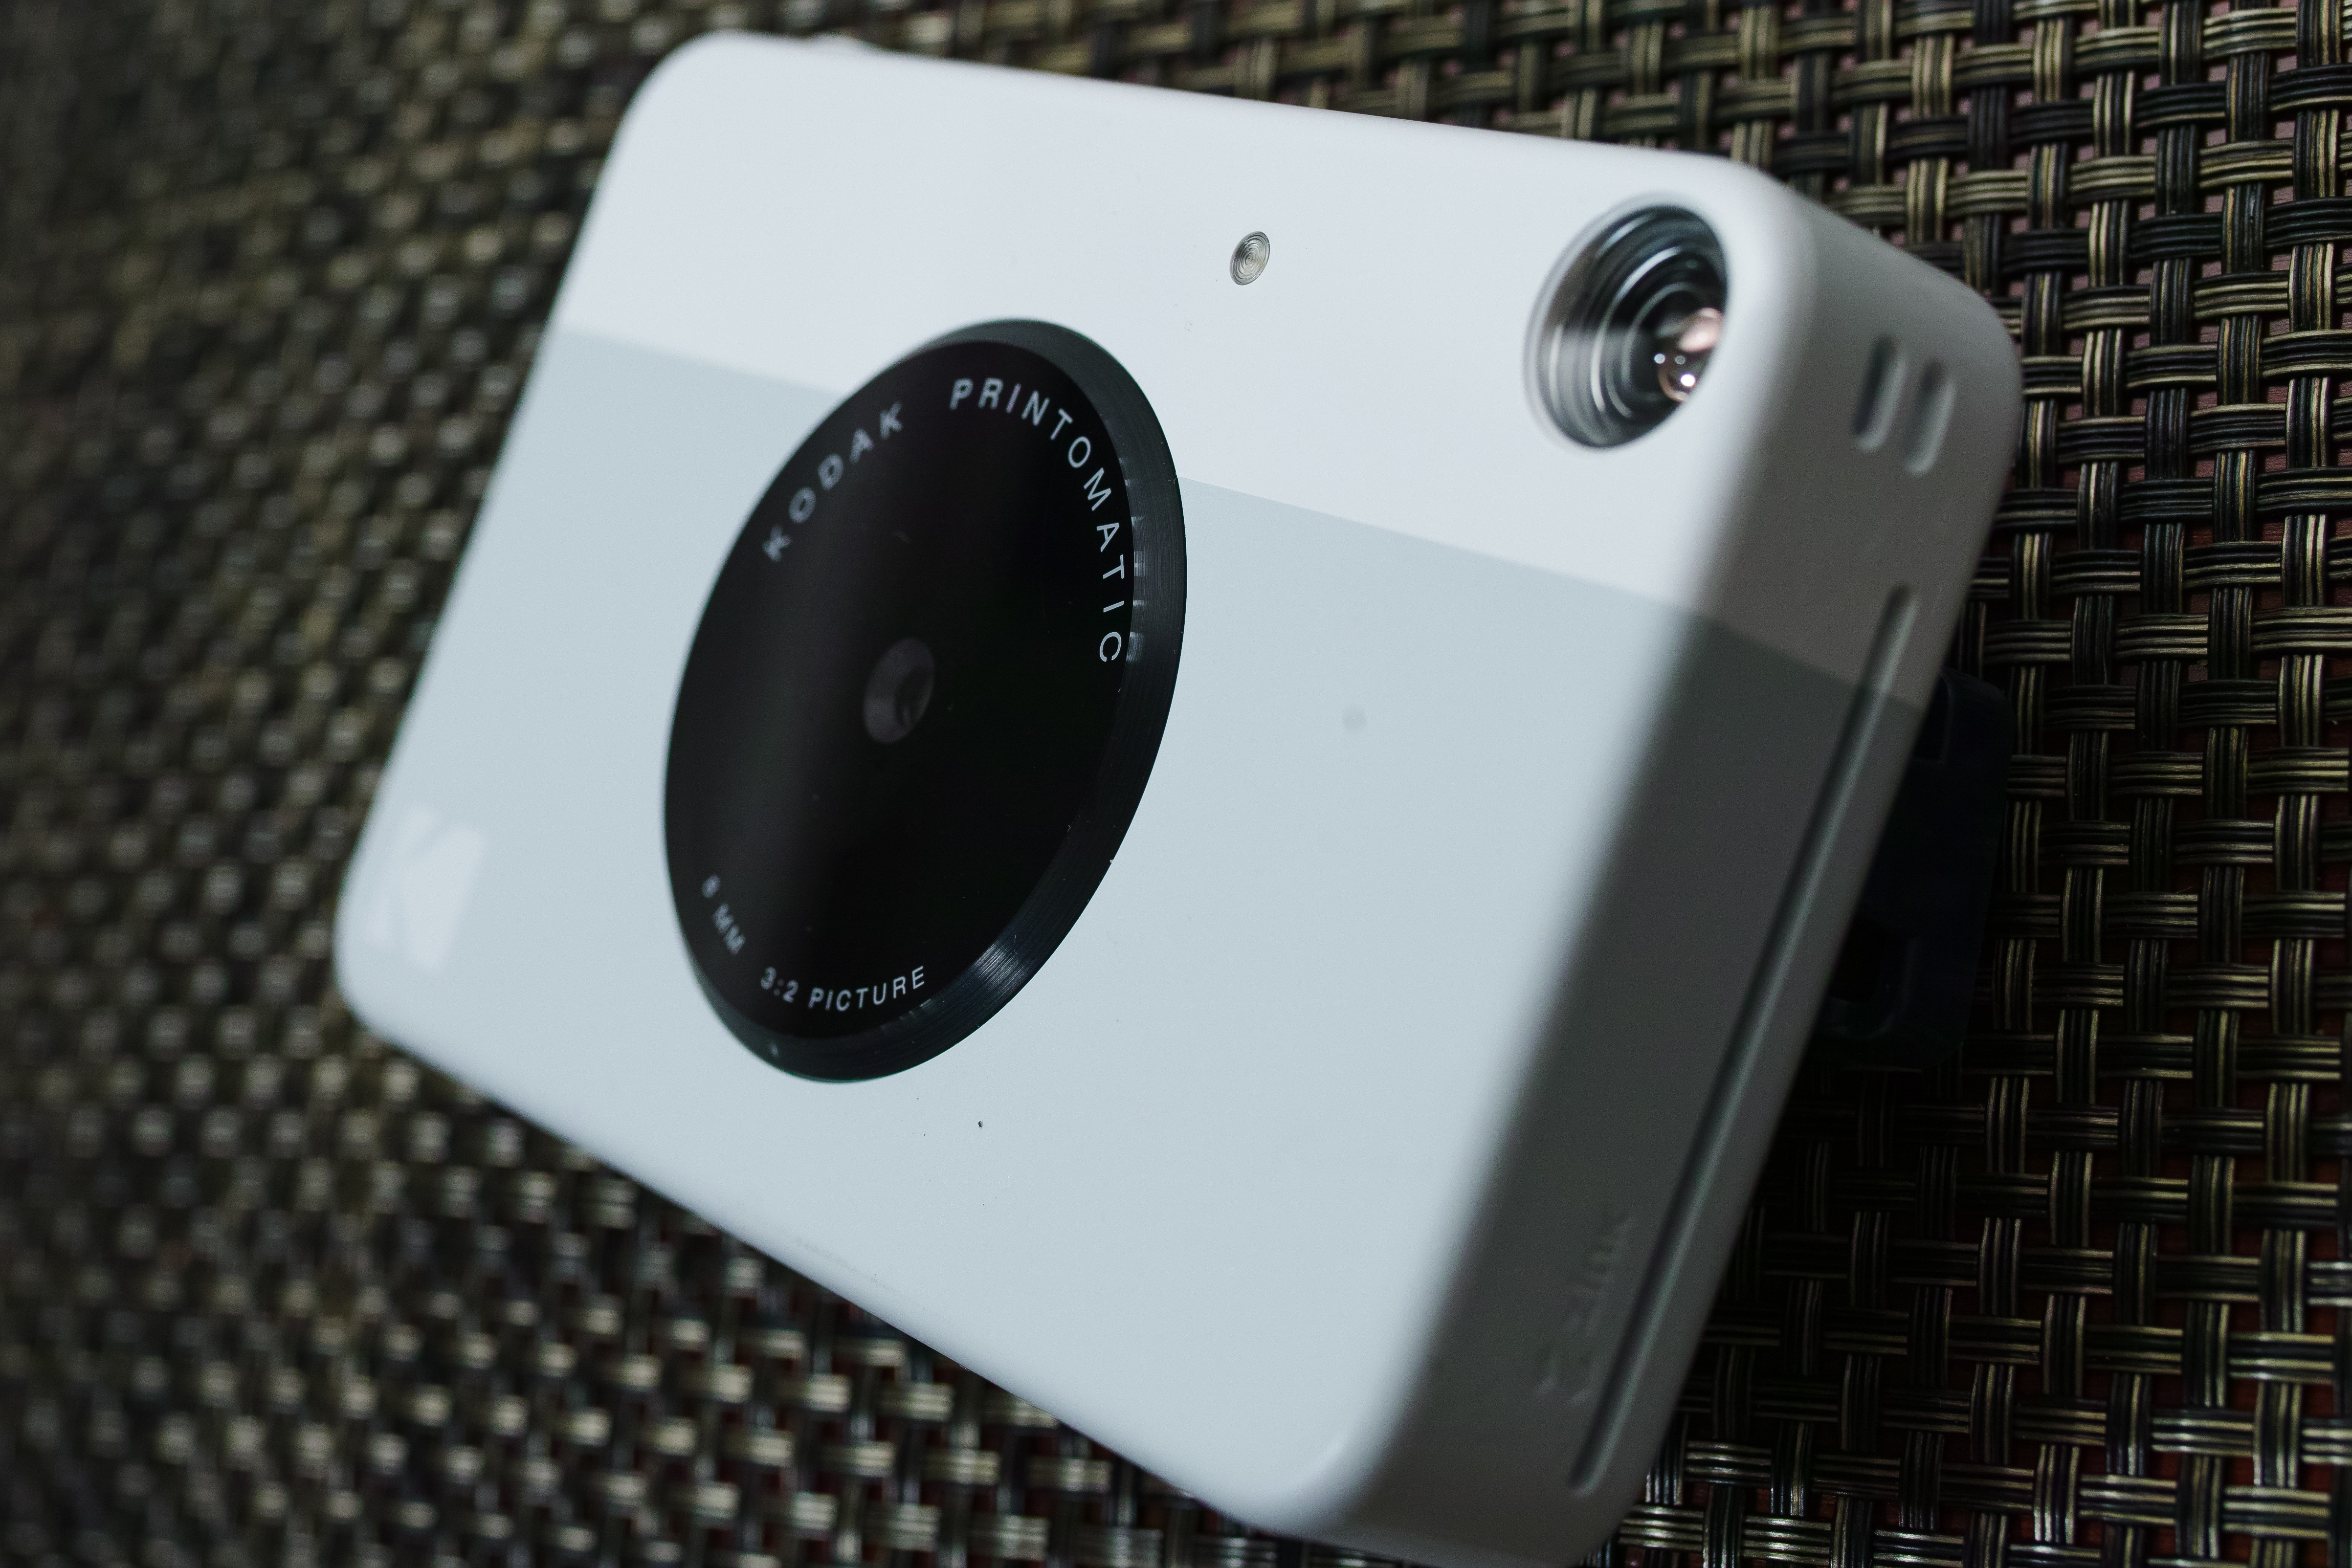 Kodak Printomatic Instant Print Digital Camera review